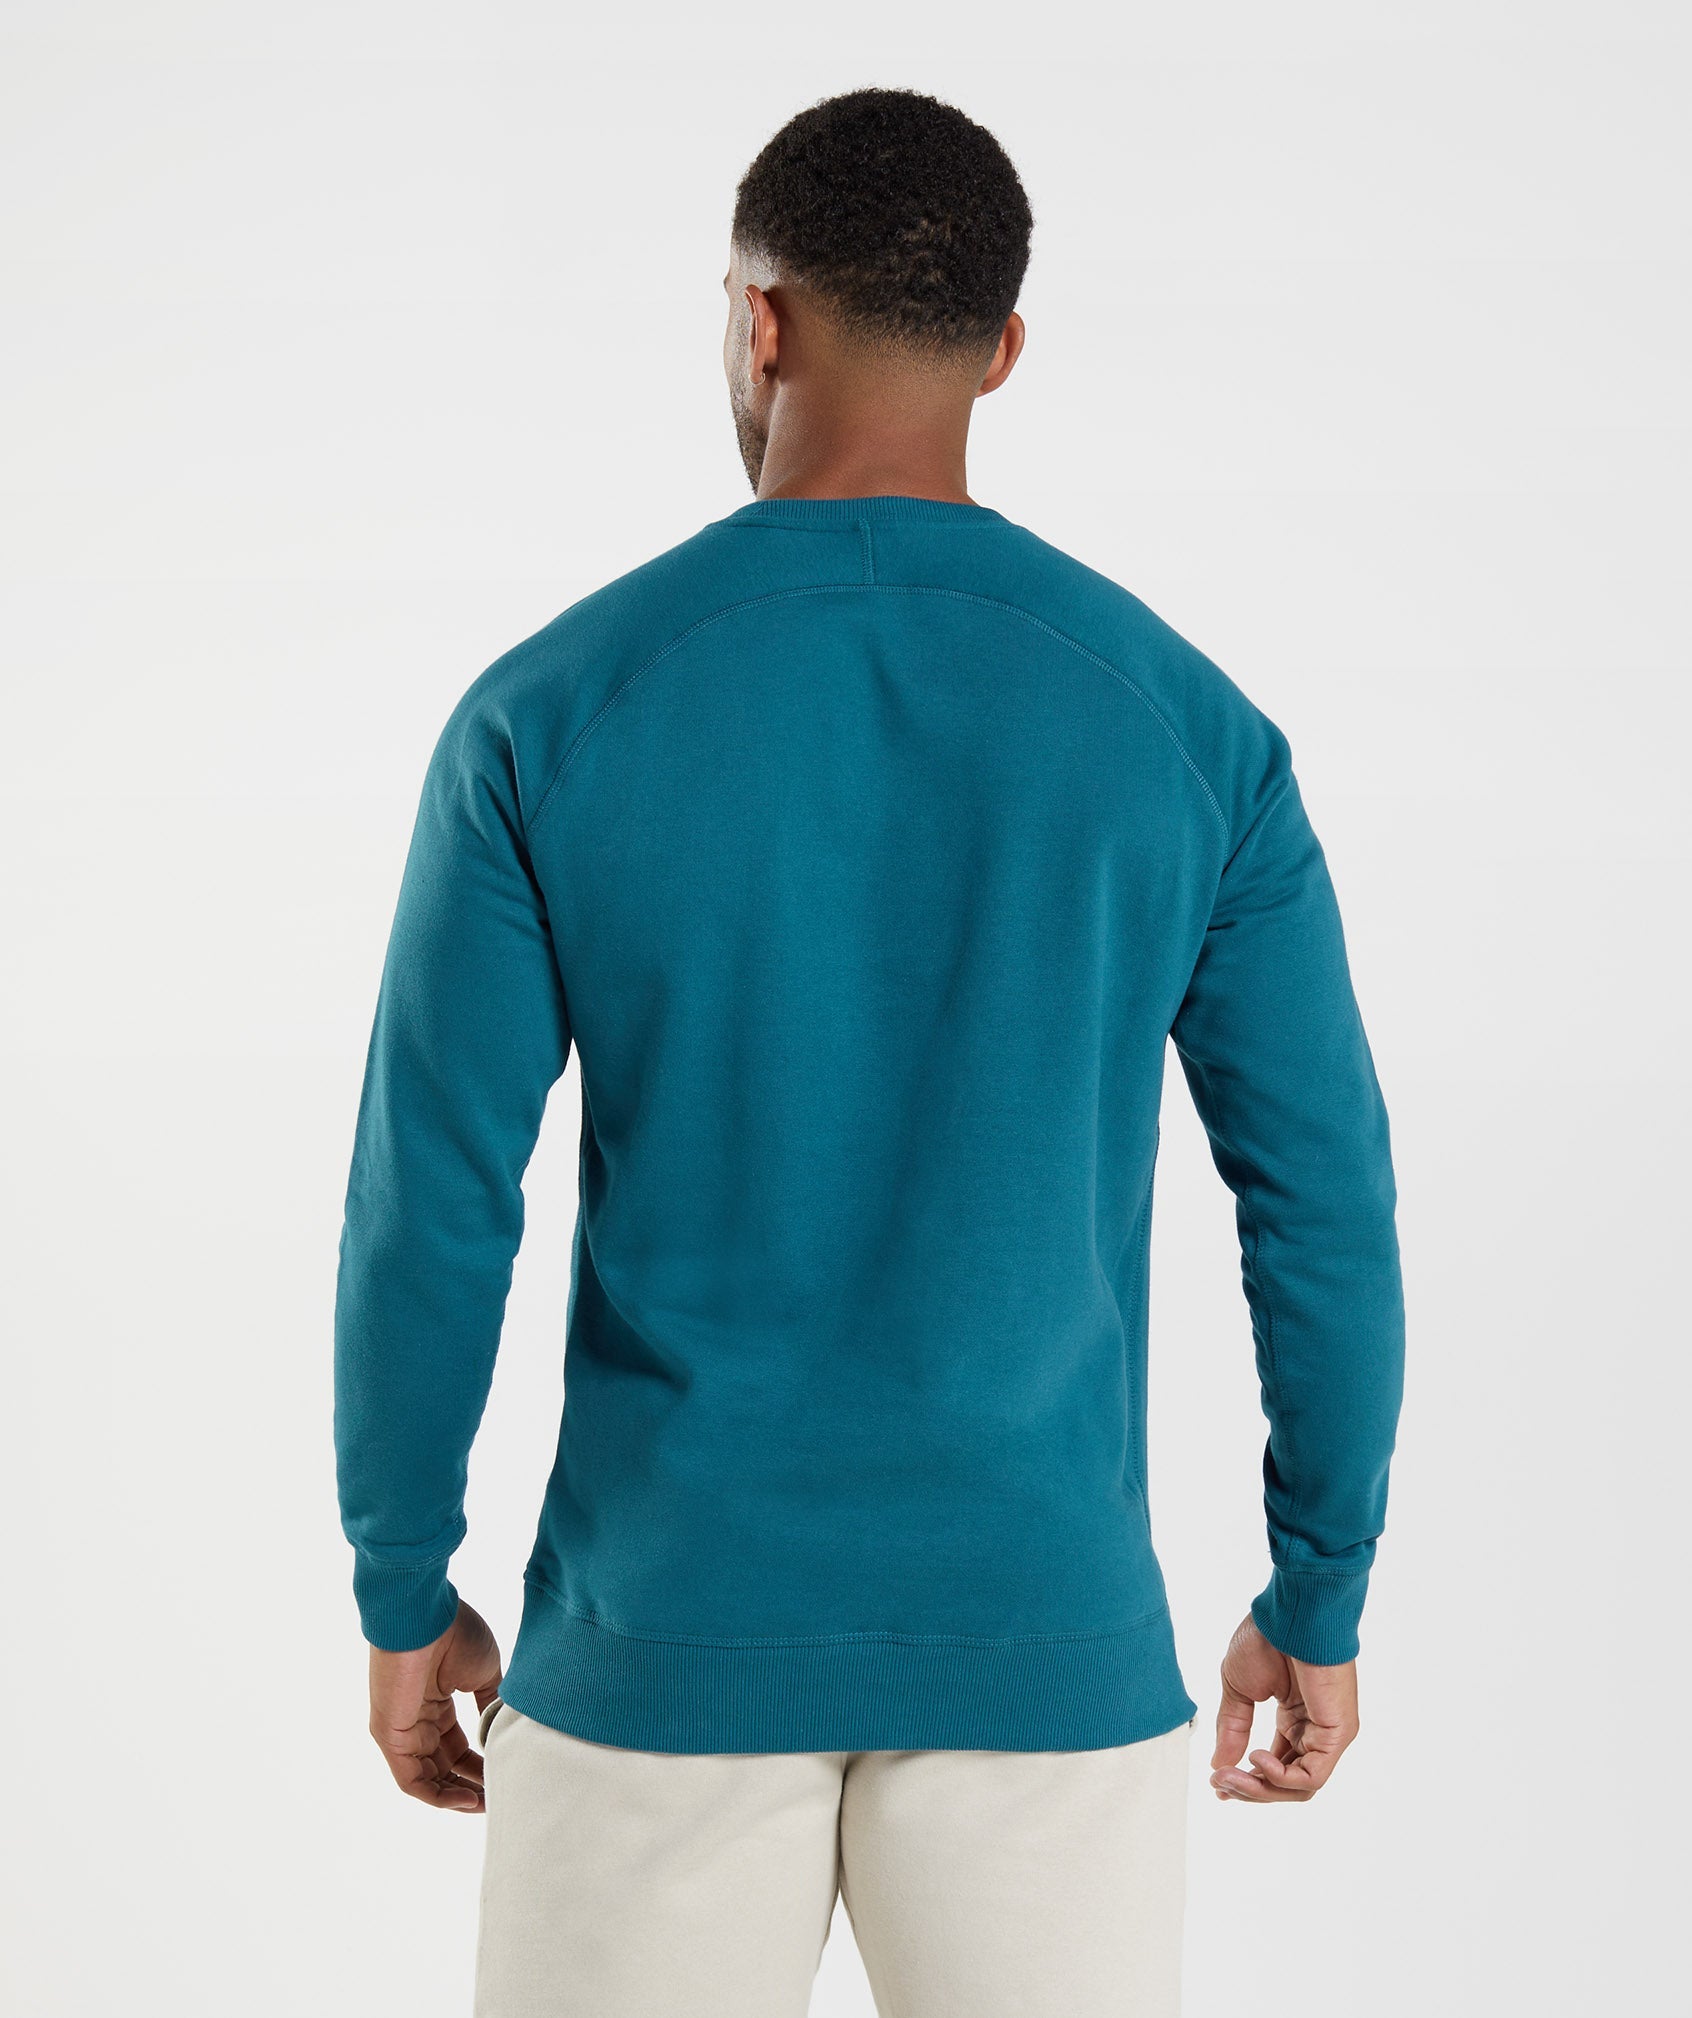 Crest Sweatshirt in Atlantic Blue